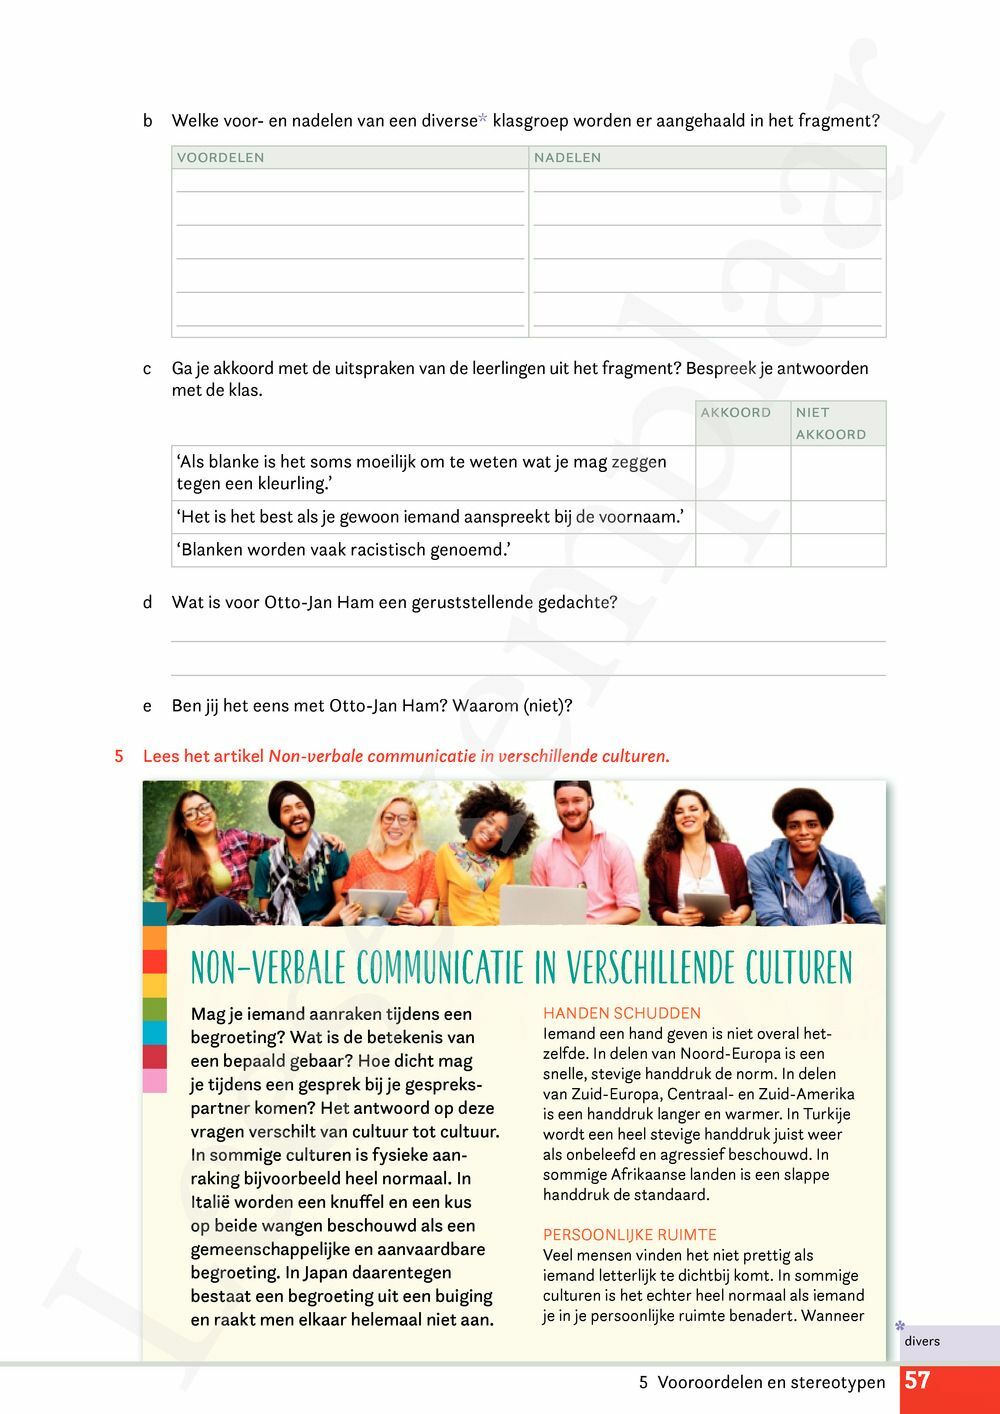 Preview: Campus Nederlands 3 Leerwerkboek (incl. Pelckmans Portaal)